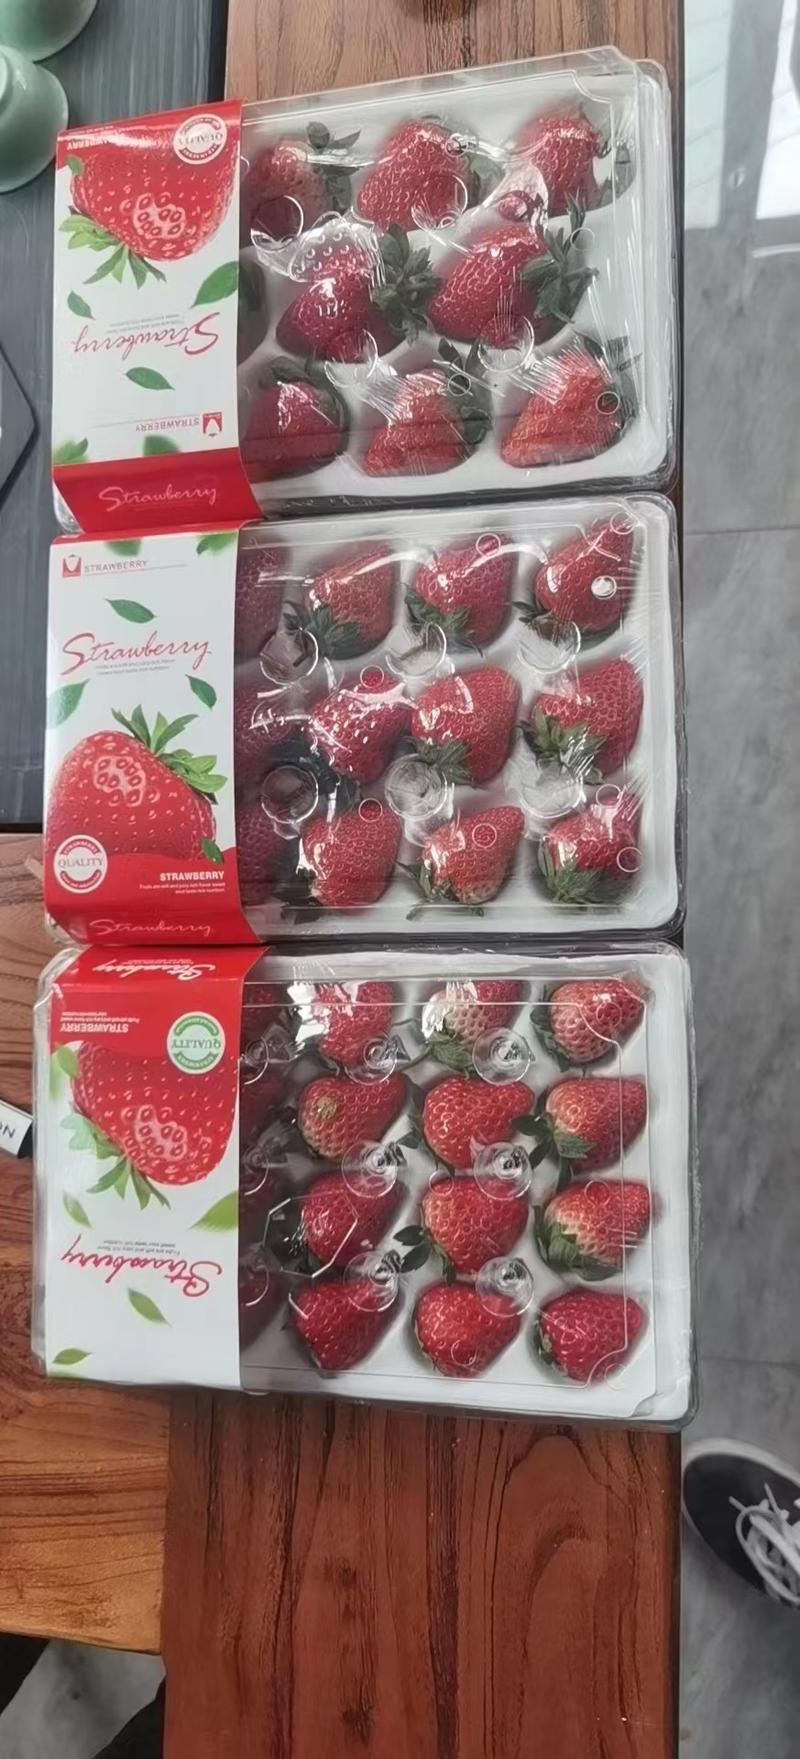 精品草莓丹东九九九九草莓红颜草莓各种规格欢迎来电